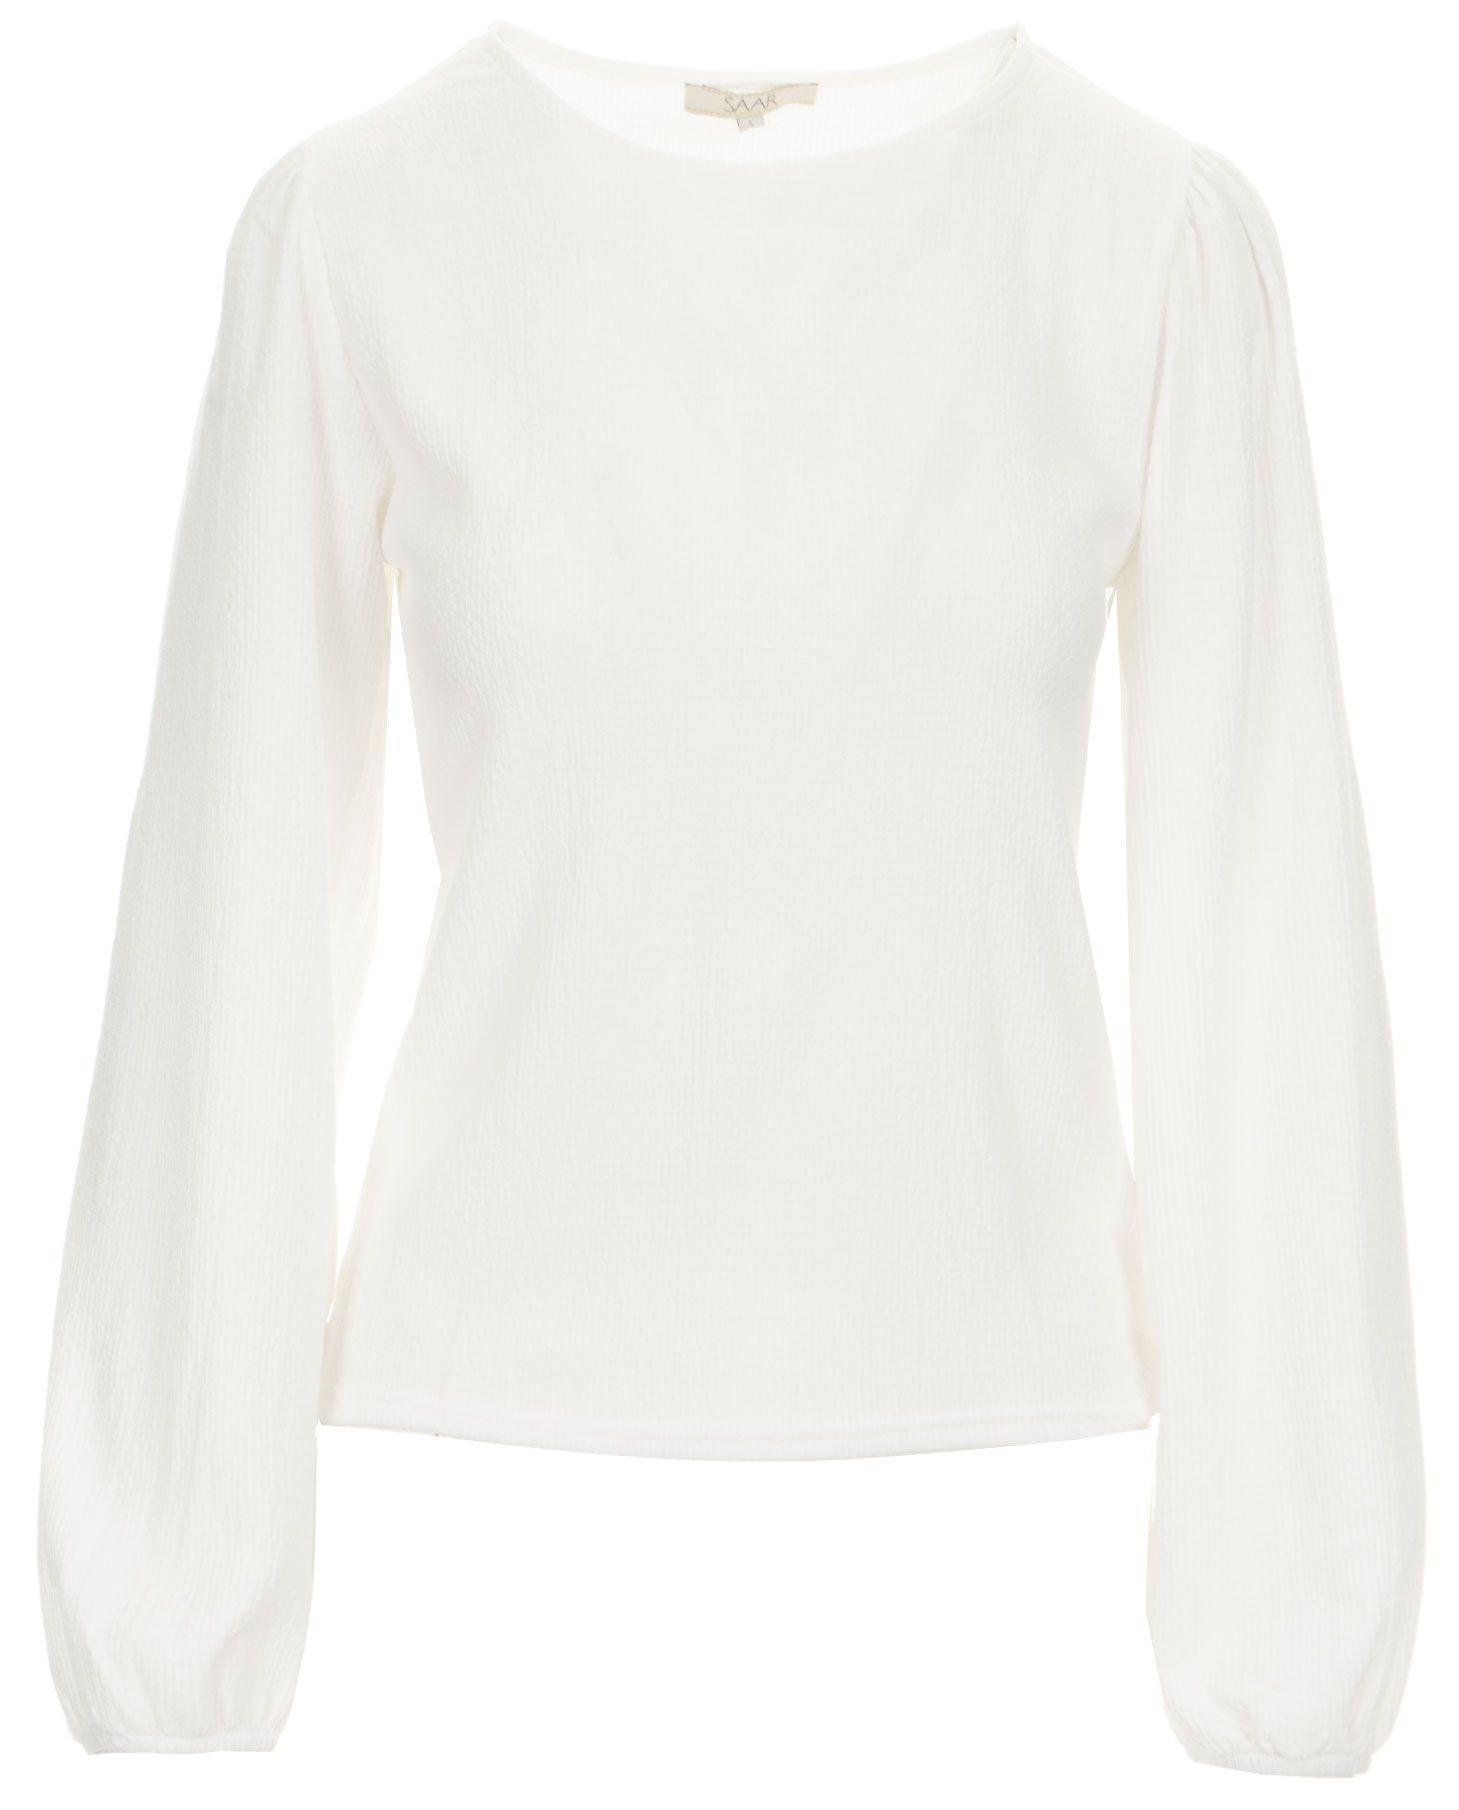 Saar SAAR blouse Luna Off white 00076244-5000